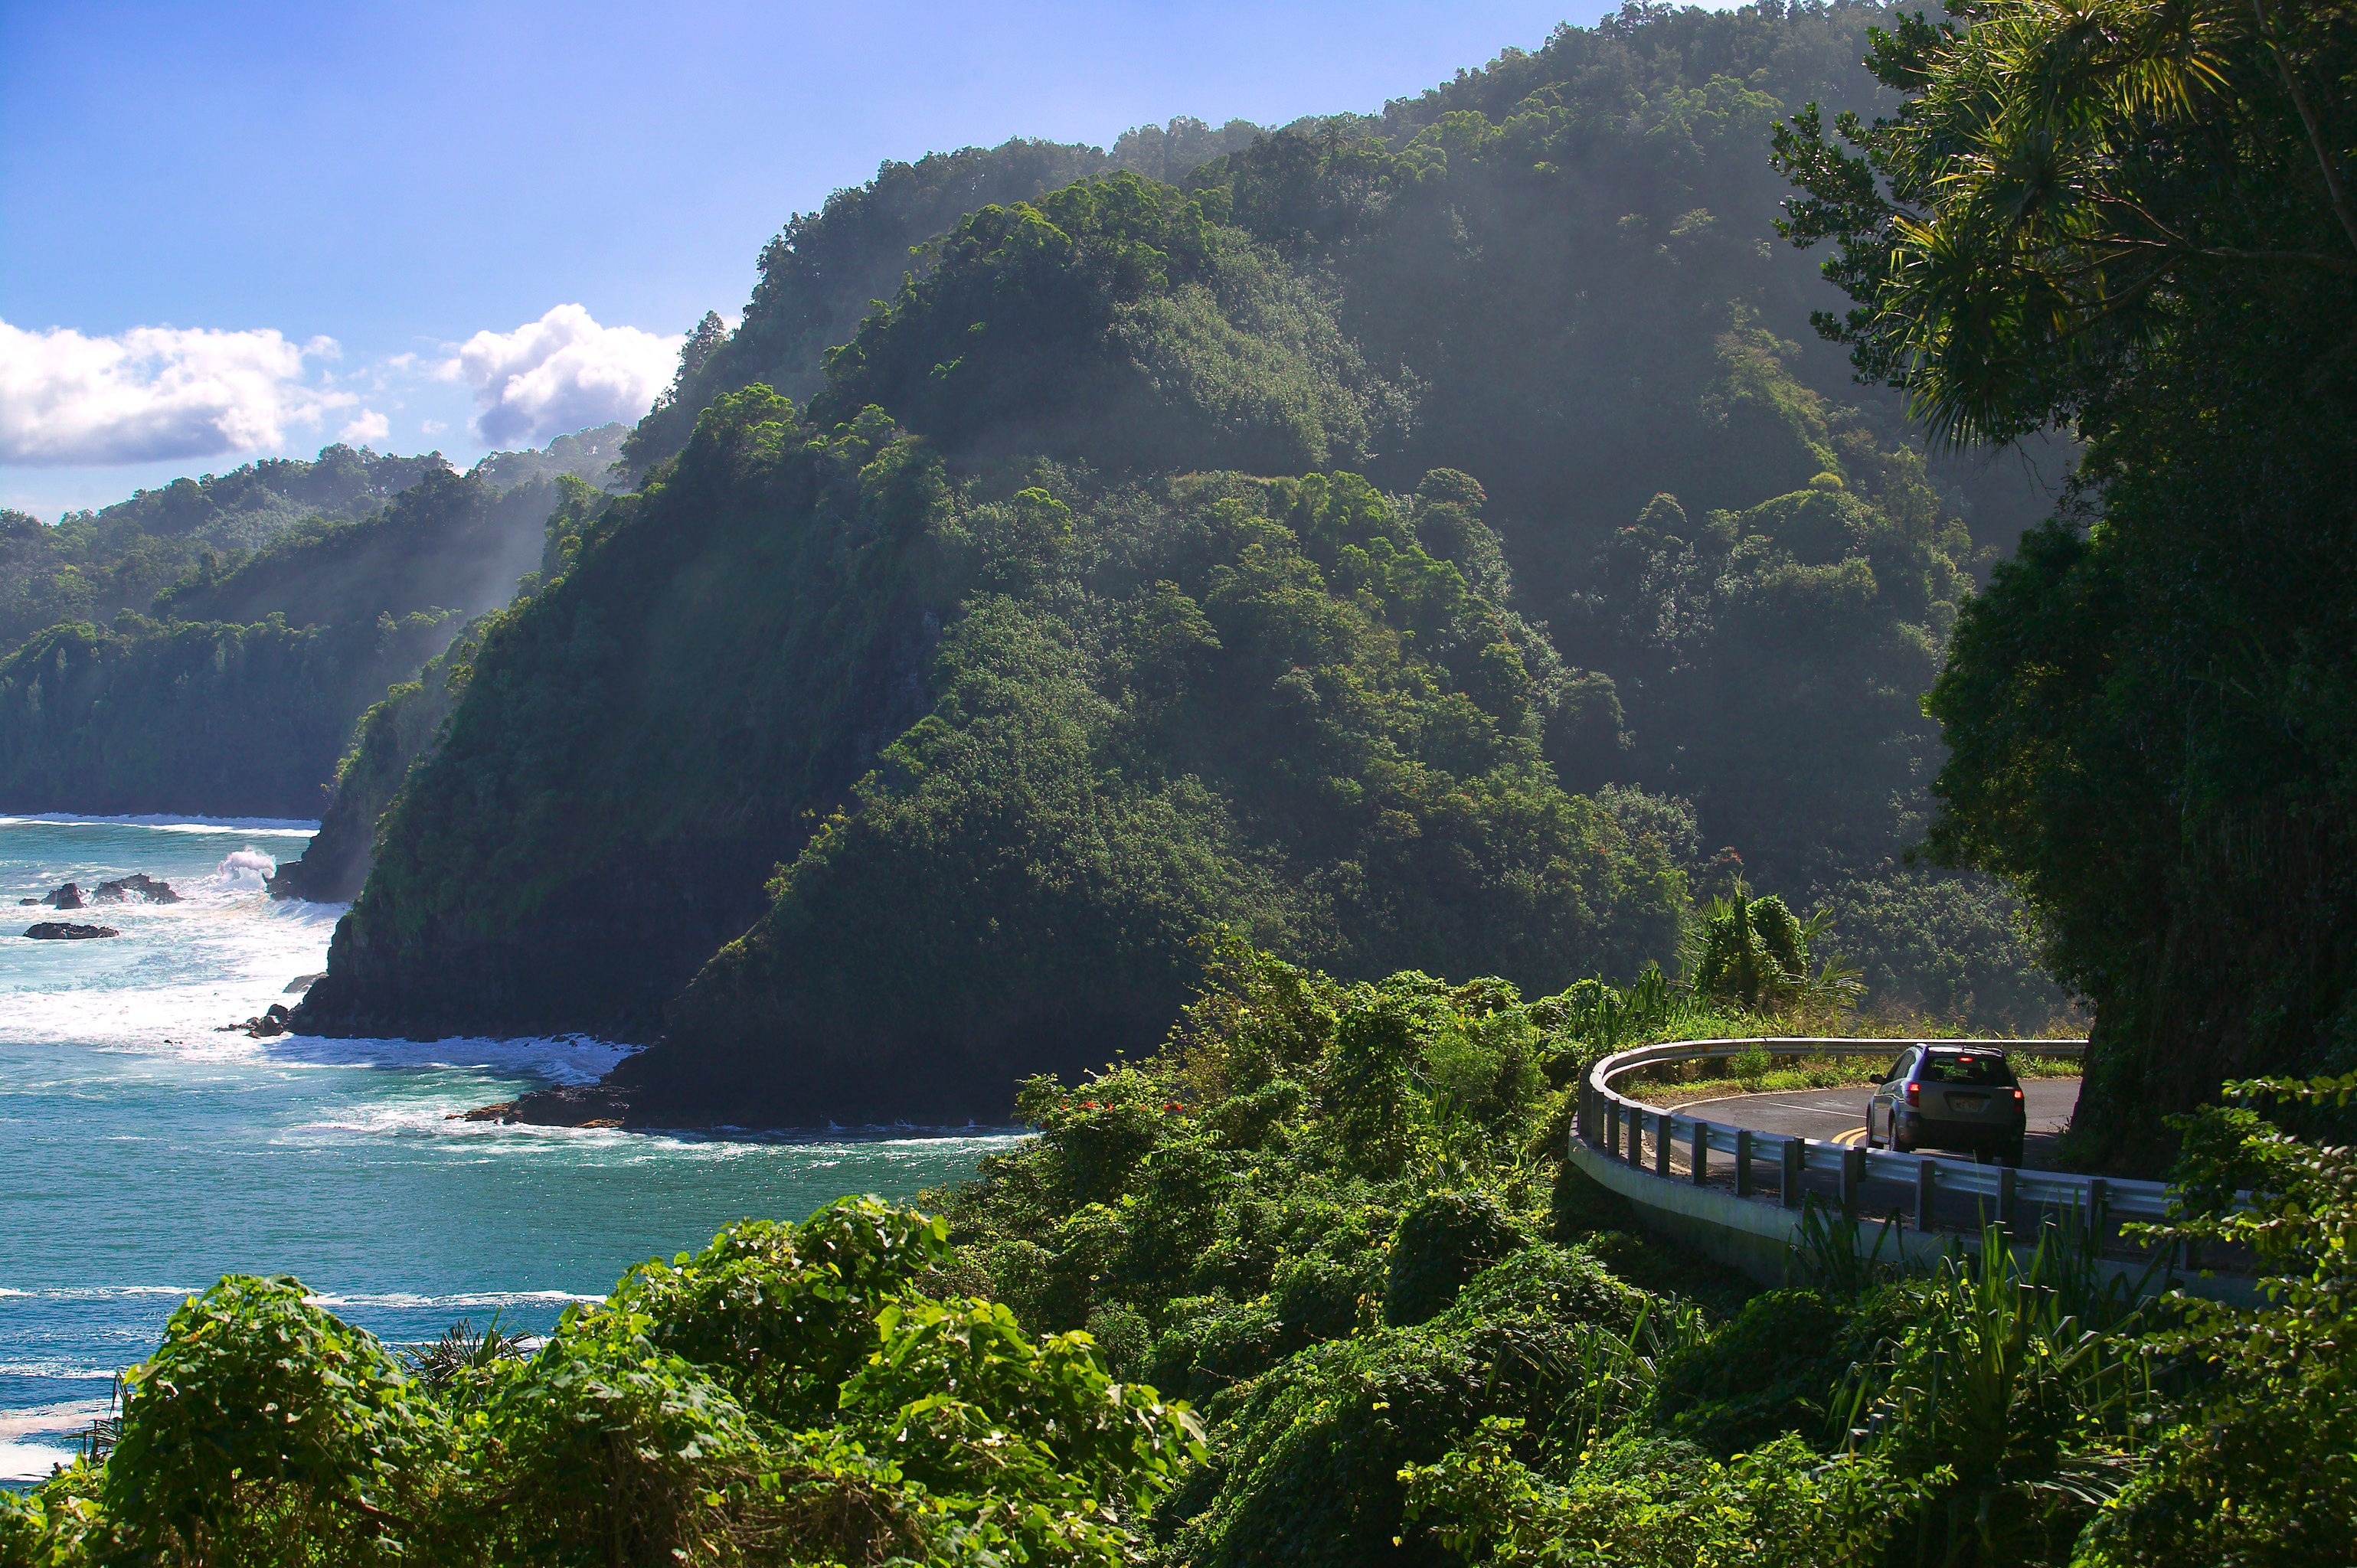 Take the Hana Highway to explore Maui